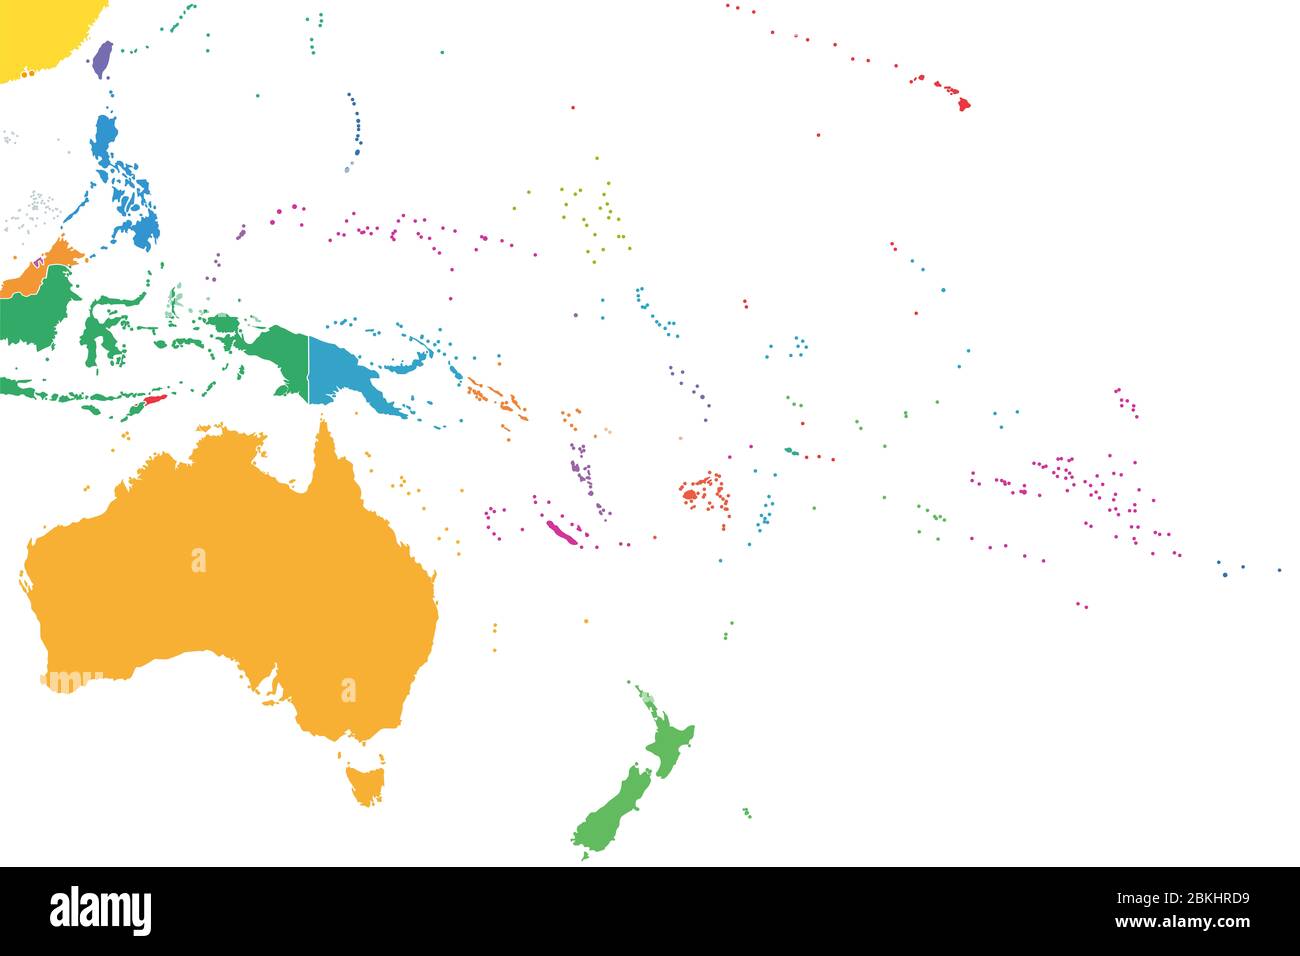 Ozeanien, farbige einzelne Staaten, politische Karte. Geographische Region, südöstlich der asiatisch-pazifischen Region. Australasien, Melanesien, Mikronesien, Polynesien. Stockfoto